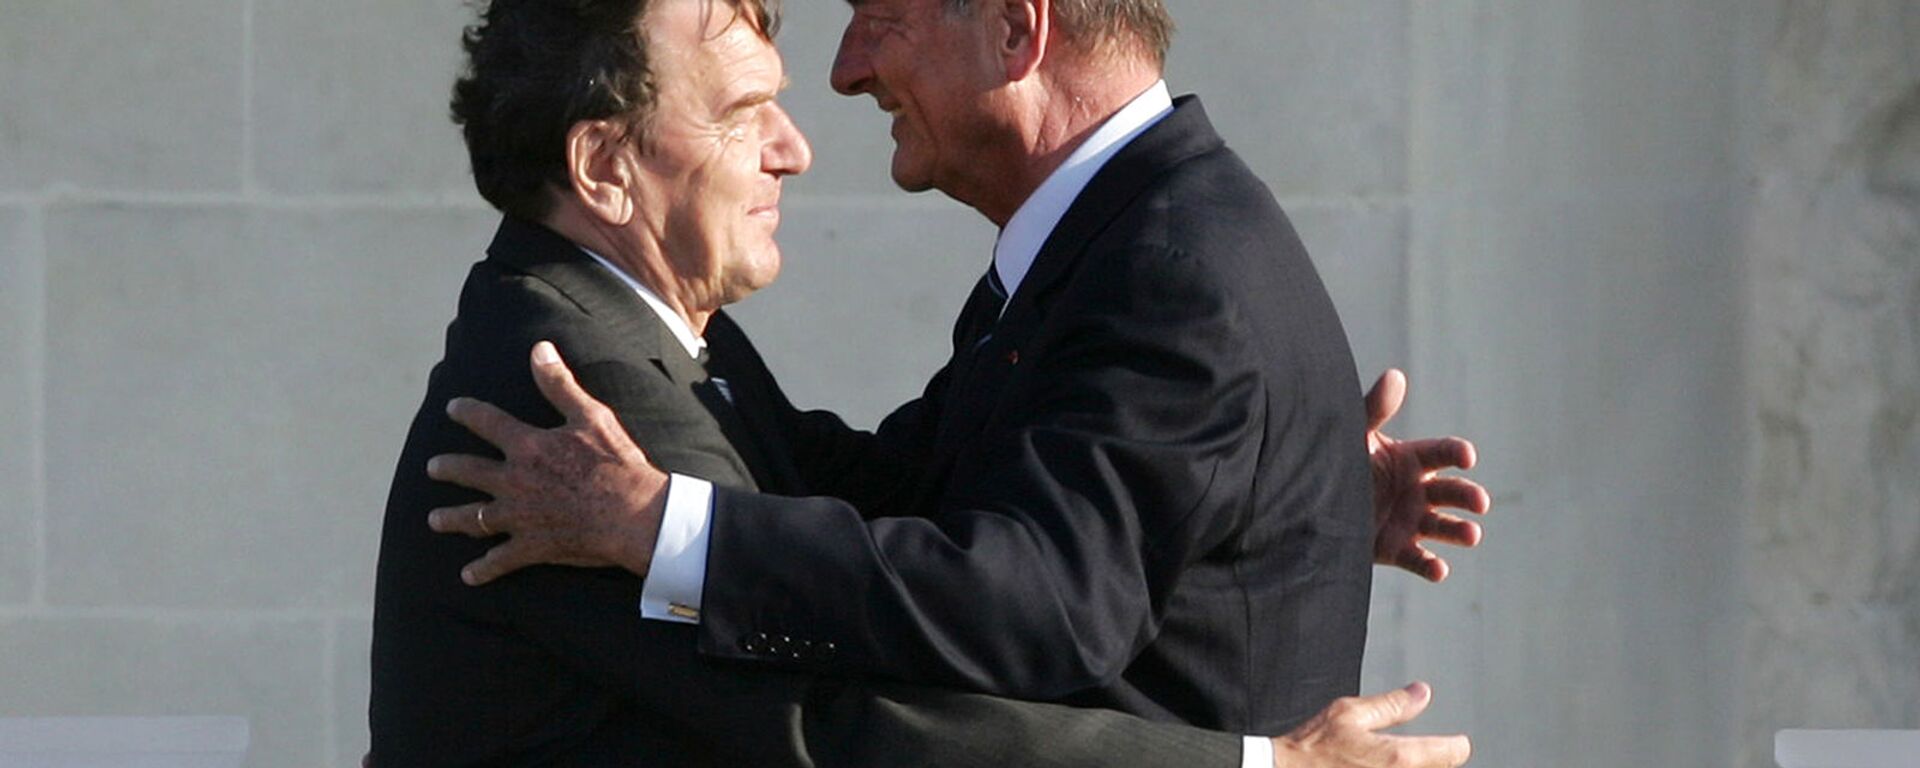 Канцлер Германии Герхард Шредер (слева) и президент Франции Жак Ширак обнимаются во время франко-немецкой церемонии, посвященной 60-й годовщине высадки Второй мировой войны в Нормандии (6 июня 2004). Кан - Sputnik Армения, 1920, 30.09.2019